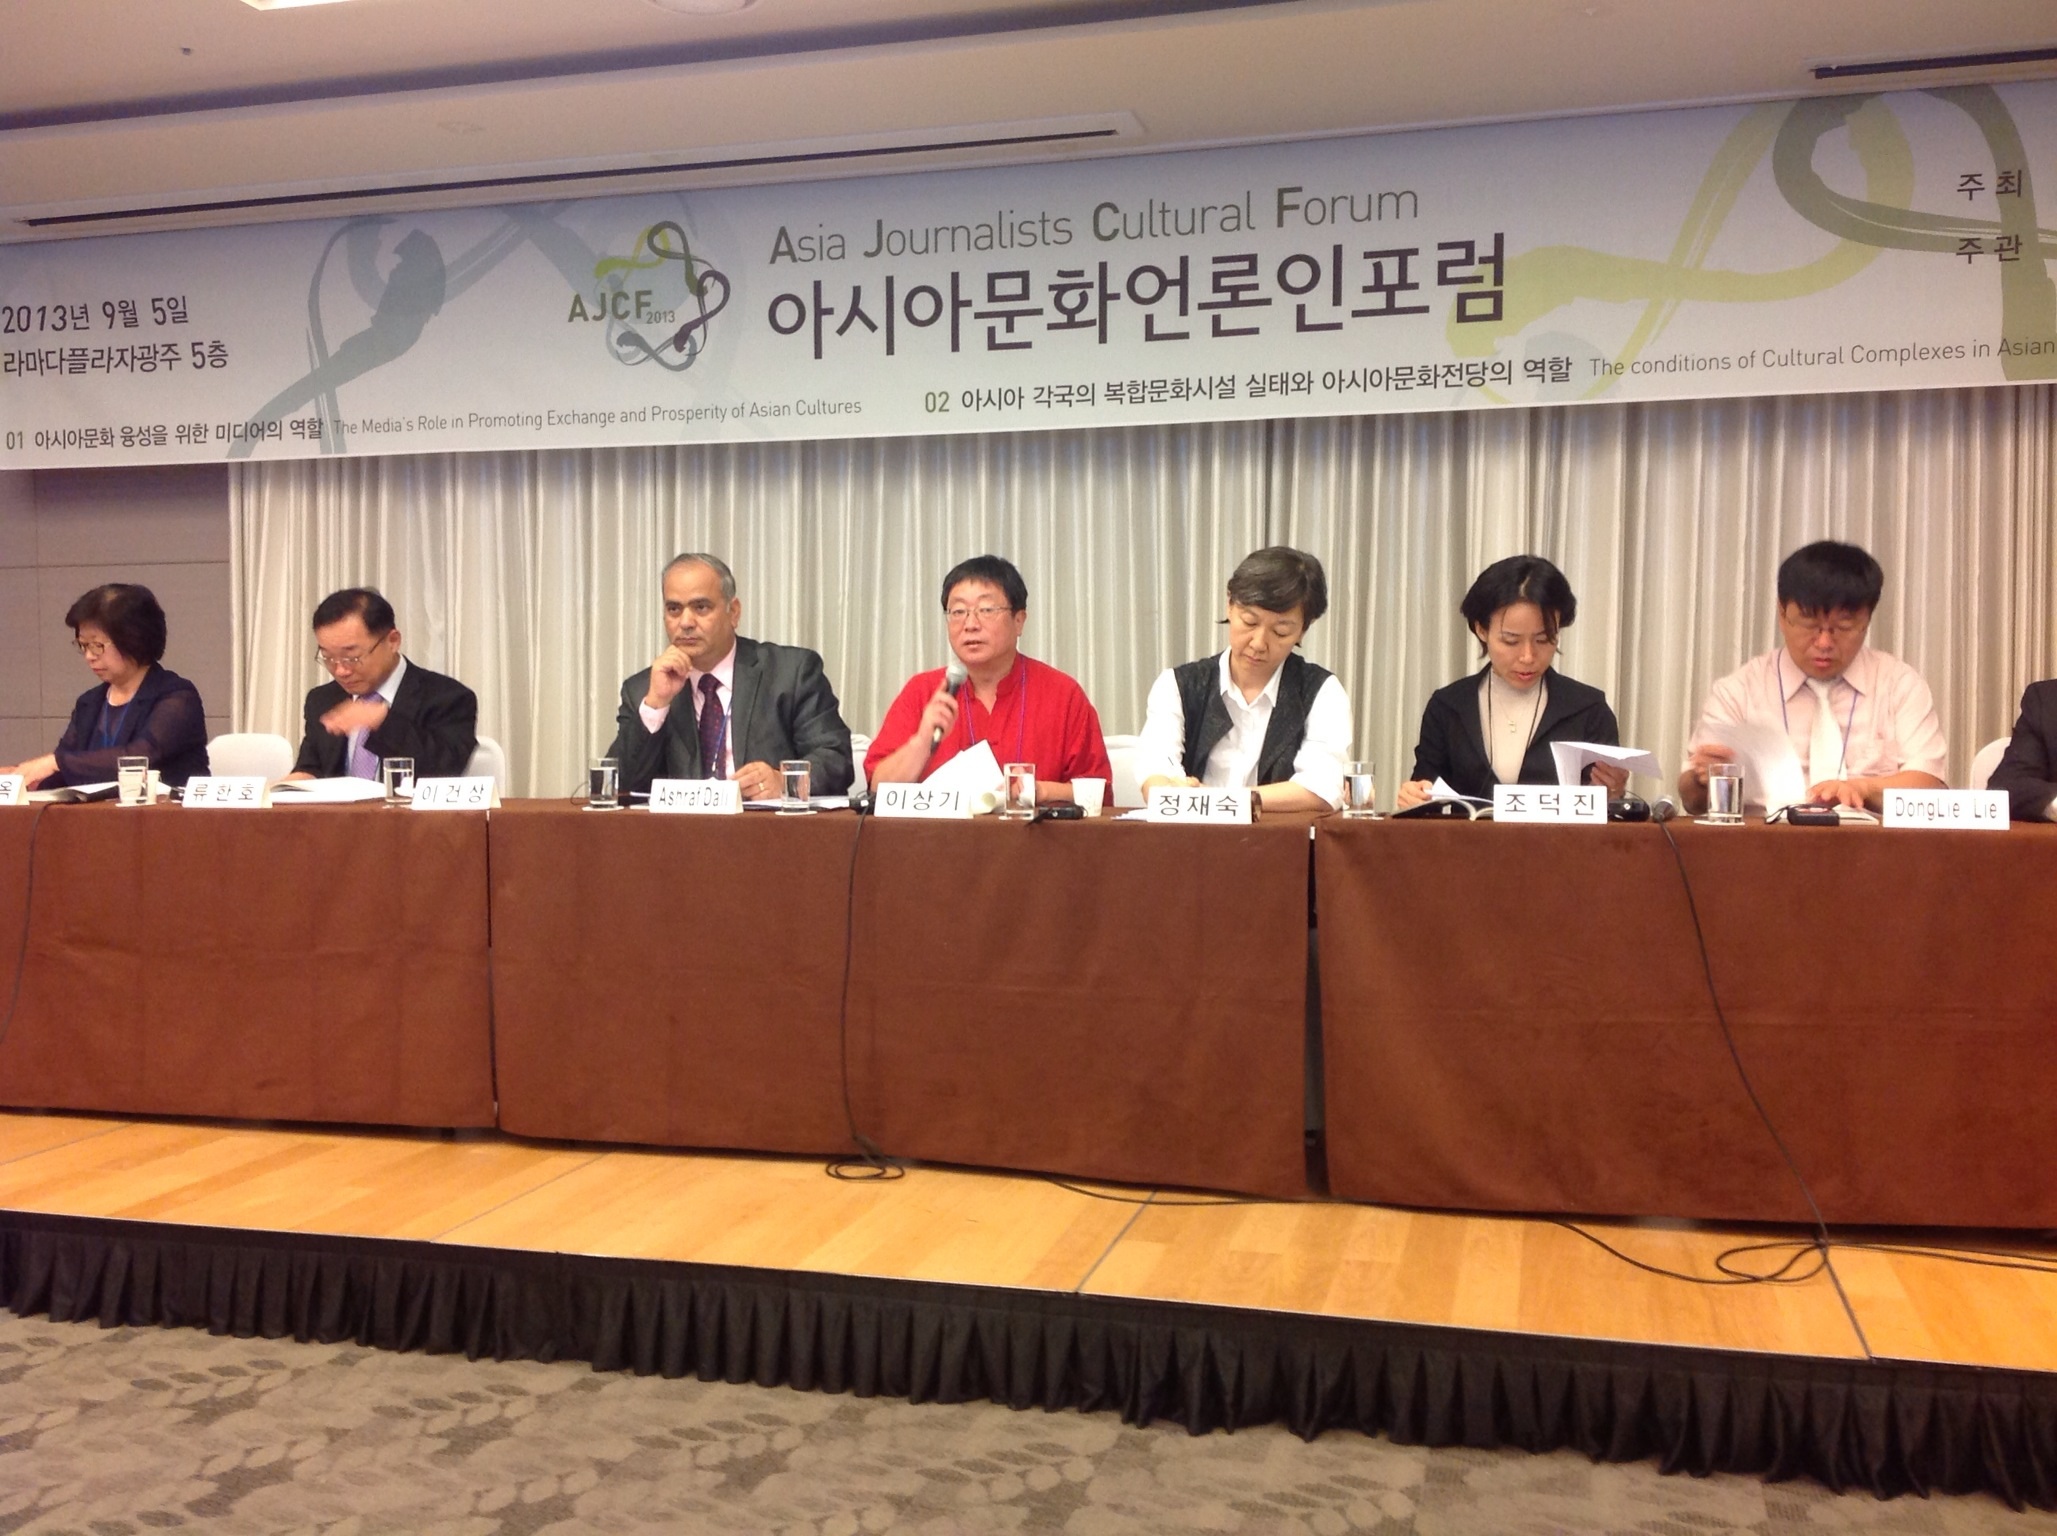 افتتاح أعمال منتدى صحفيي آسيا الثقافي في جوانجو الكورية